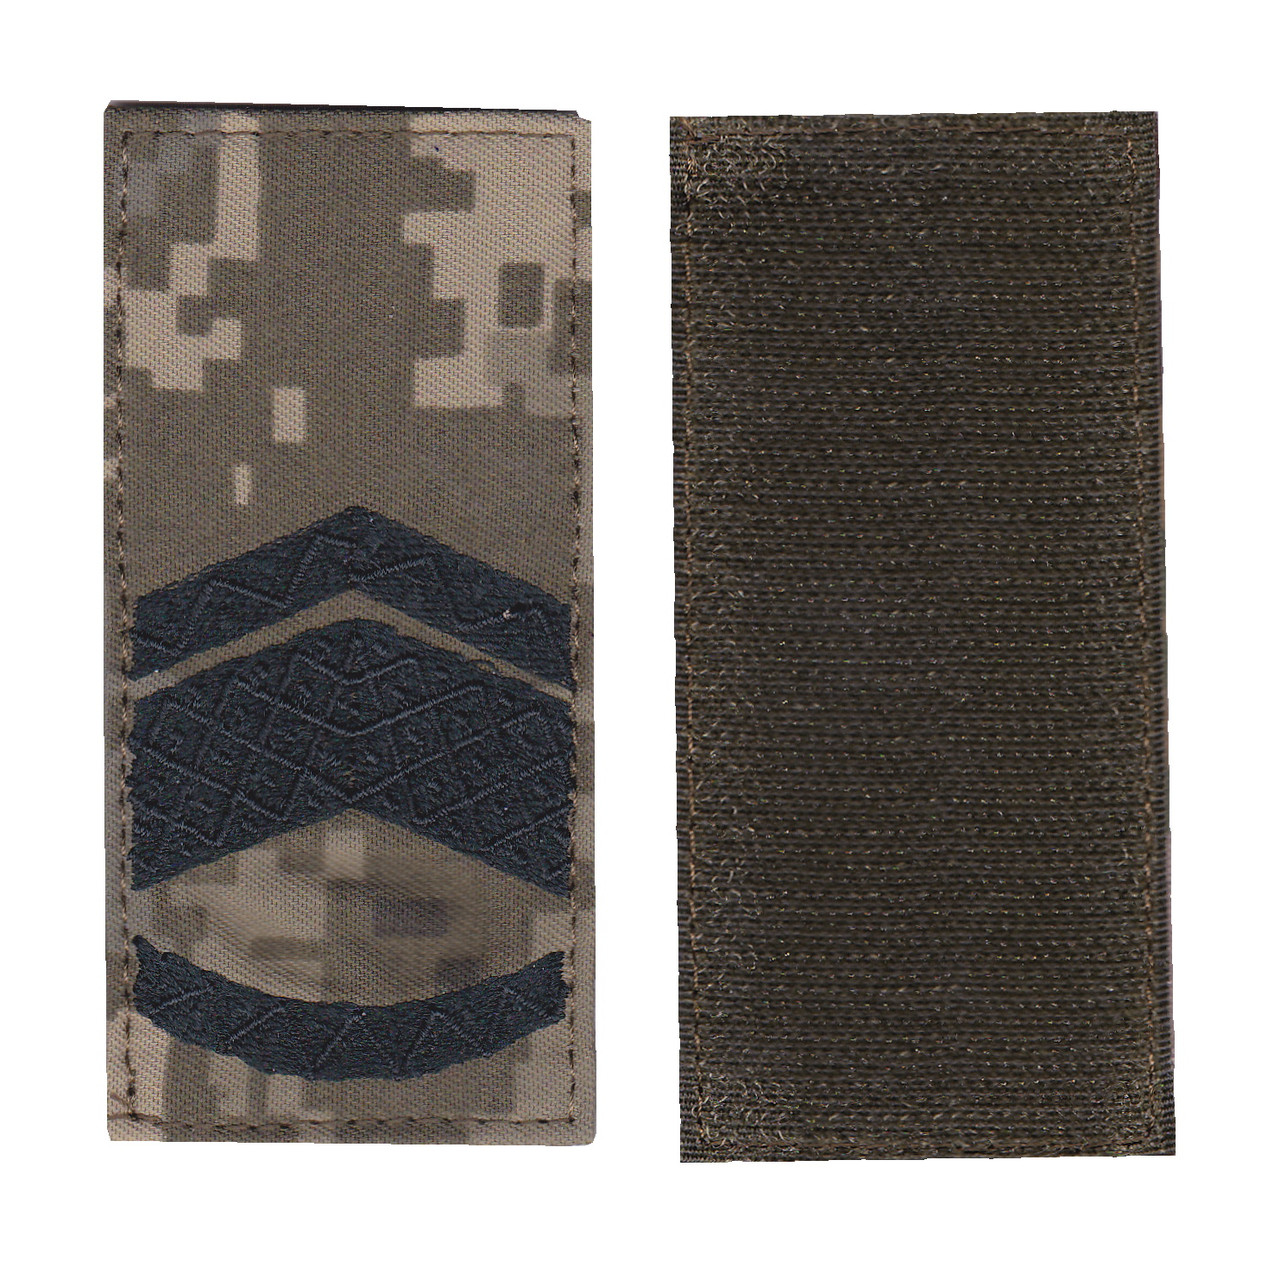 Погон майстер- сержанта військовий / армійський шеврон ЗСУ, чорний колір на пікселі. 10 см * 5 см